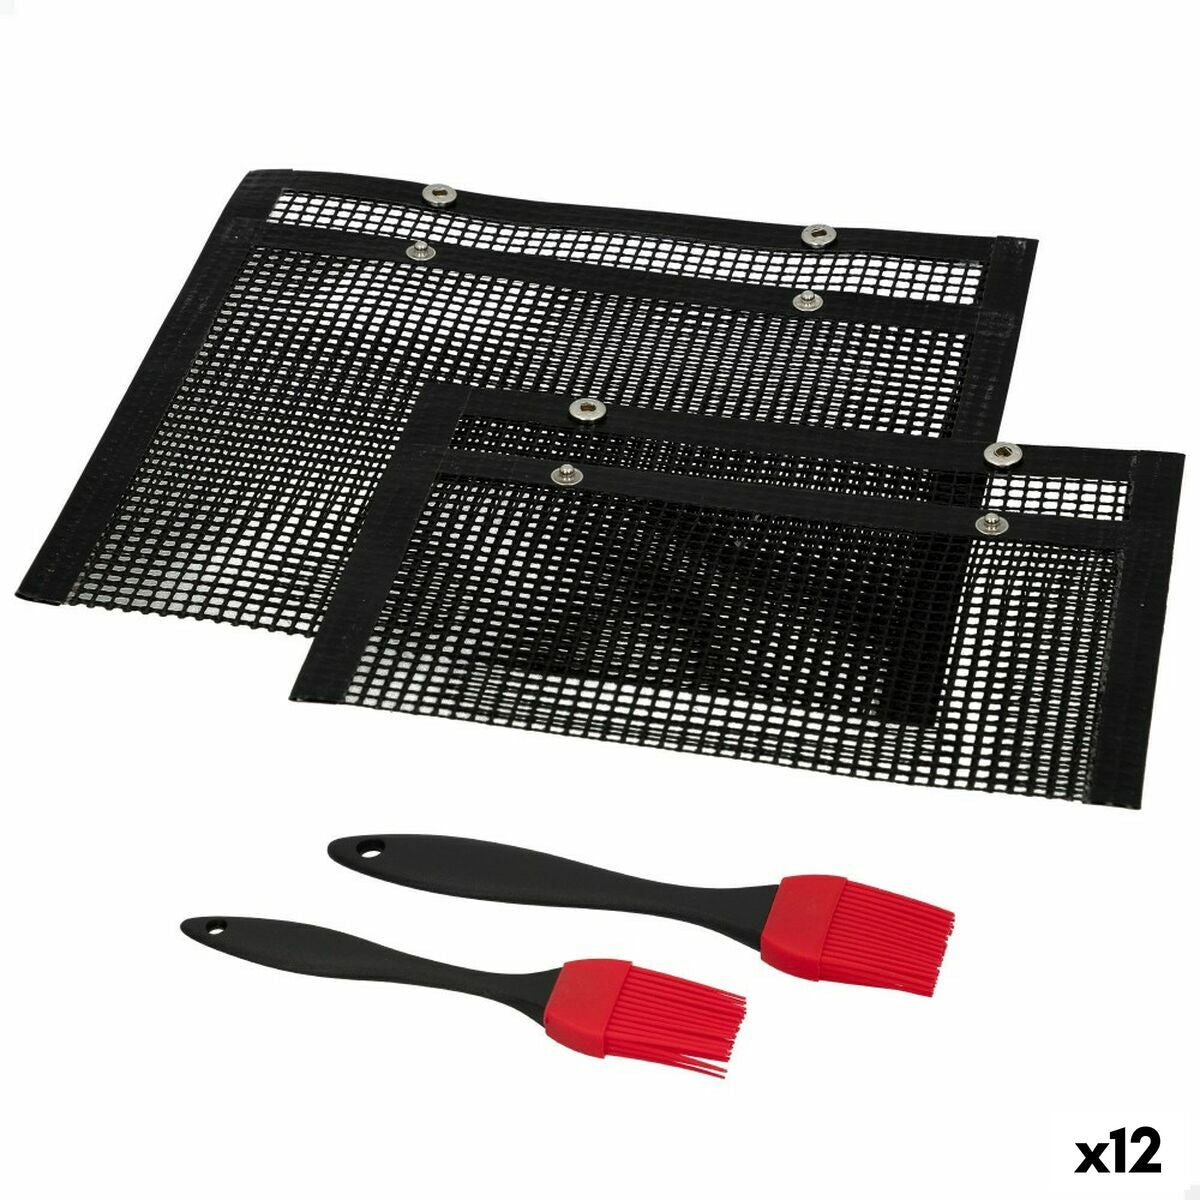 Barbecue Portatile Aktive Silicone Plastica 27 x 24,5 x 0,4 cm